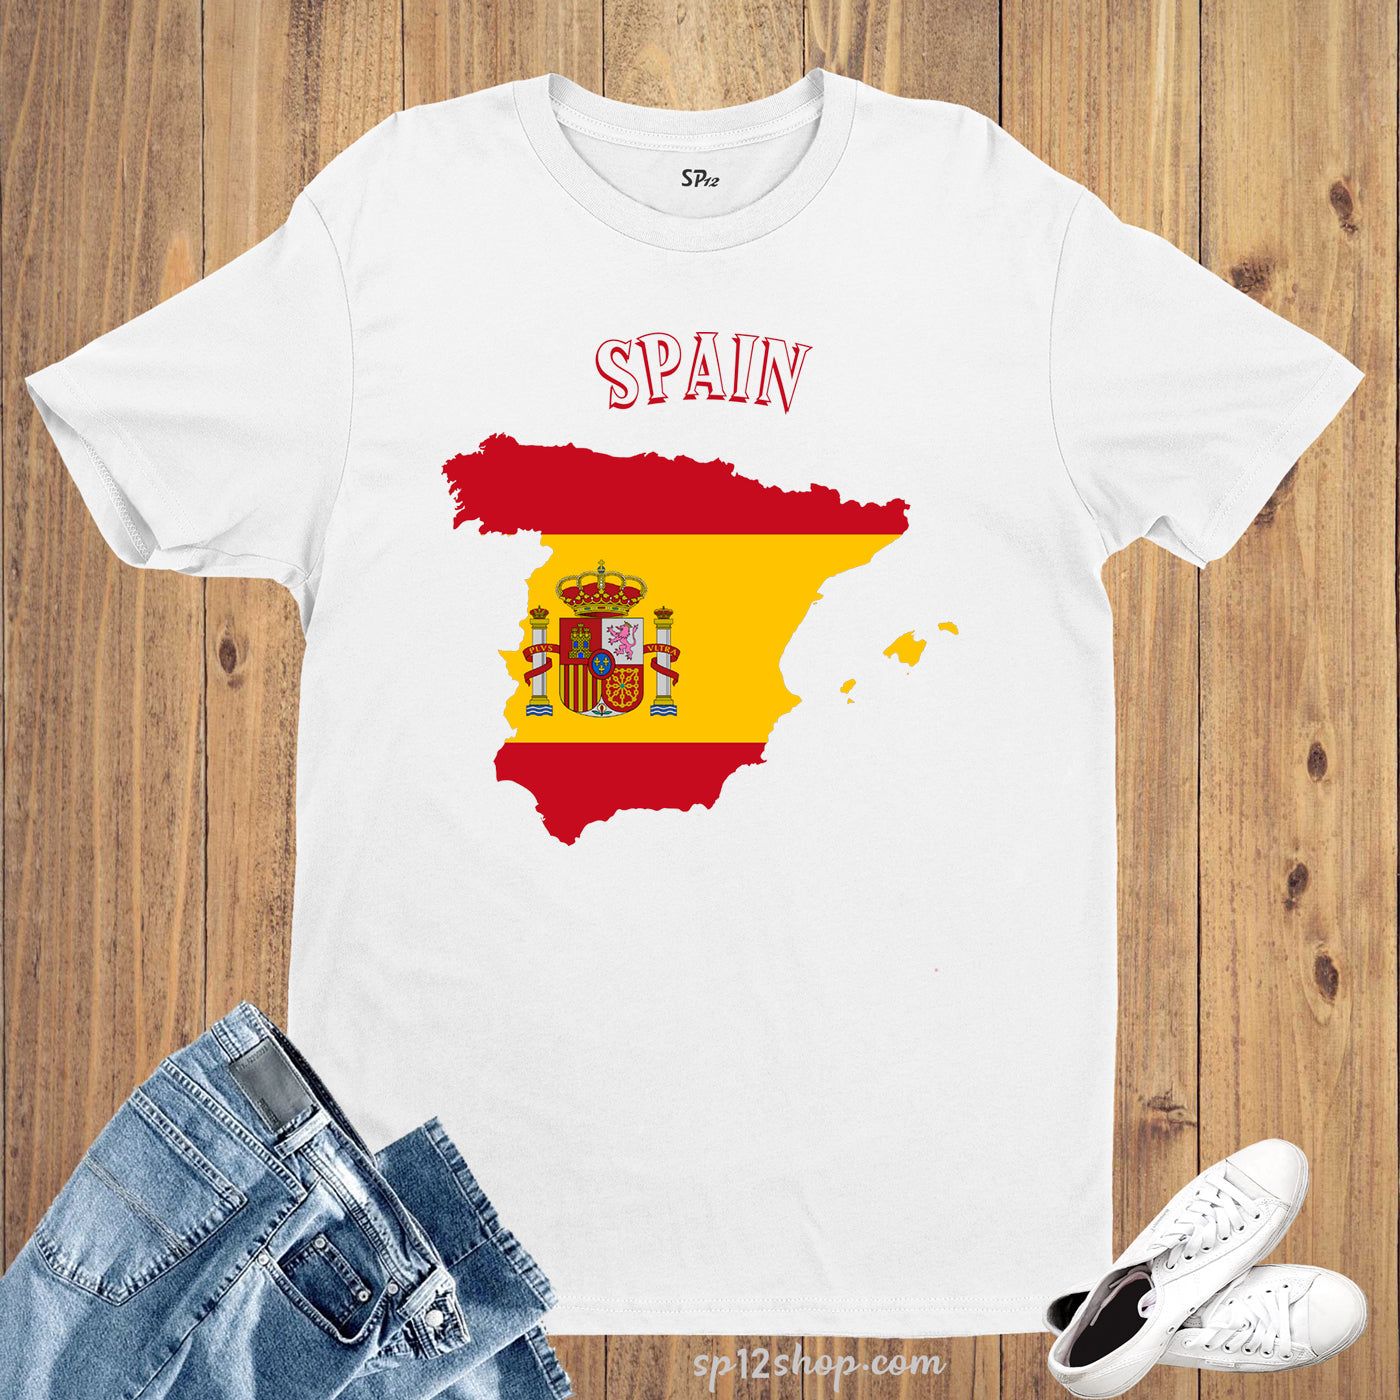 Spain Flag T Shirt Olympics FIFA World Cup Country Flag Tee Shirt